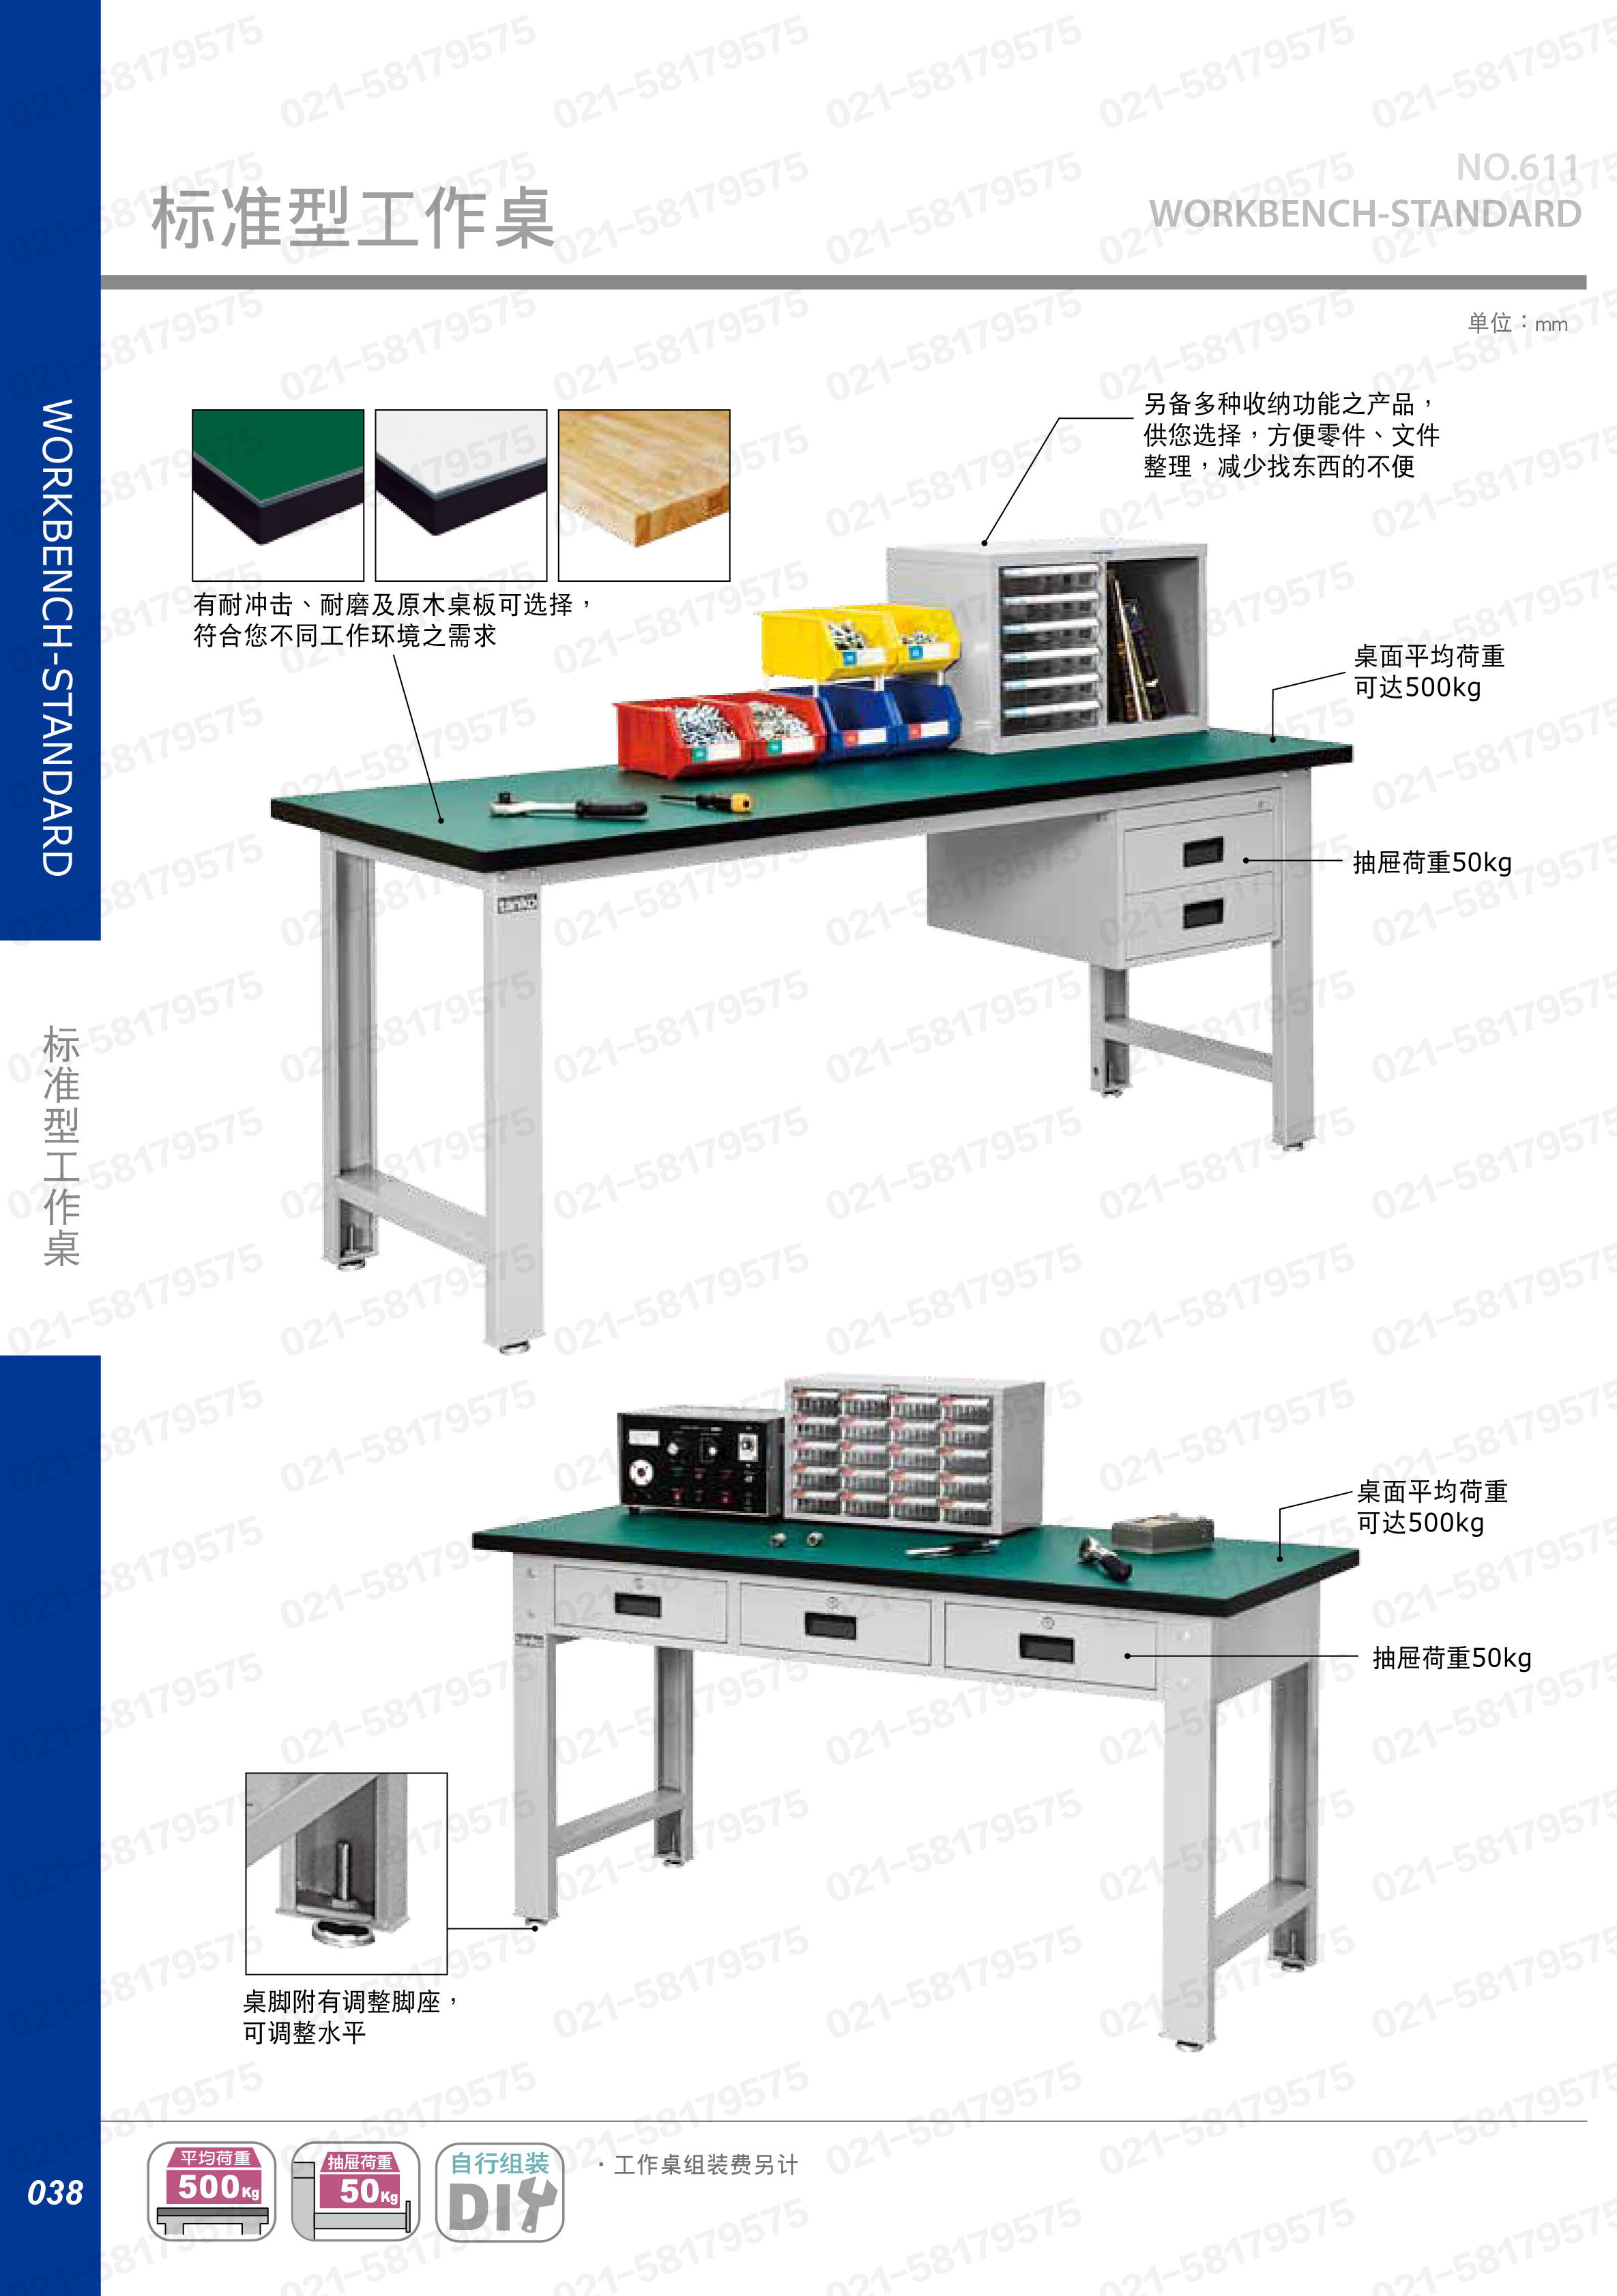 轻型工作桌1500×750×800mm 原木桌板 带双吊抽,WBS-53021W,5D2938